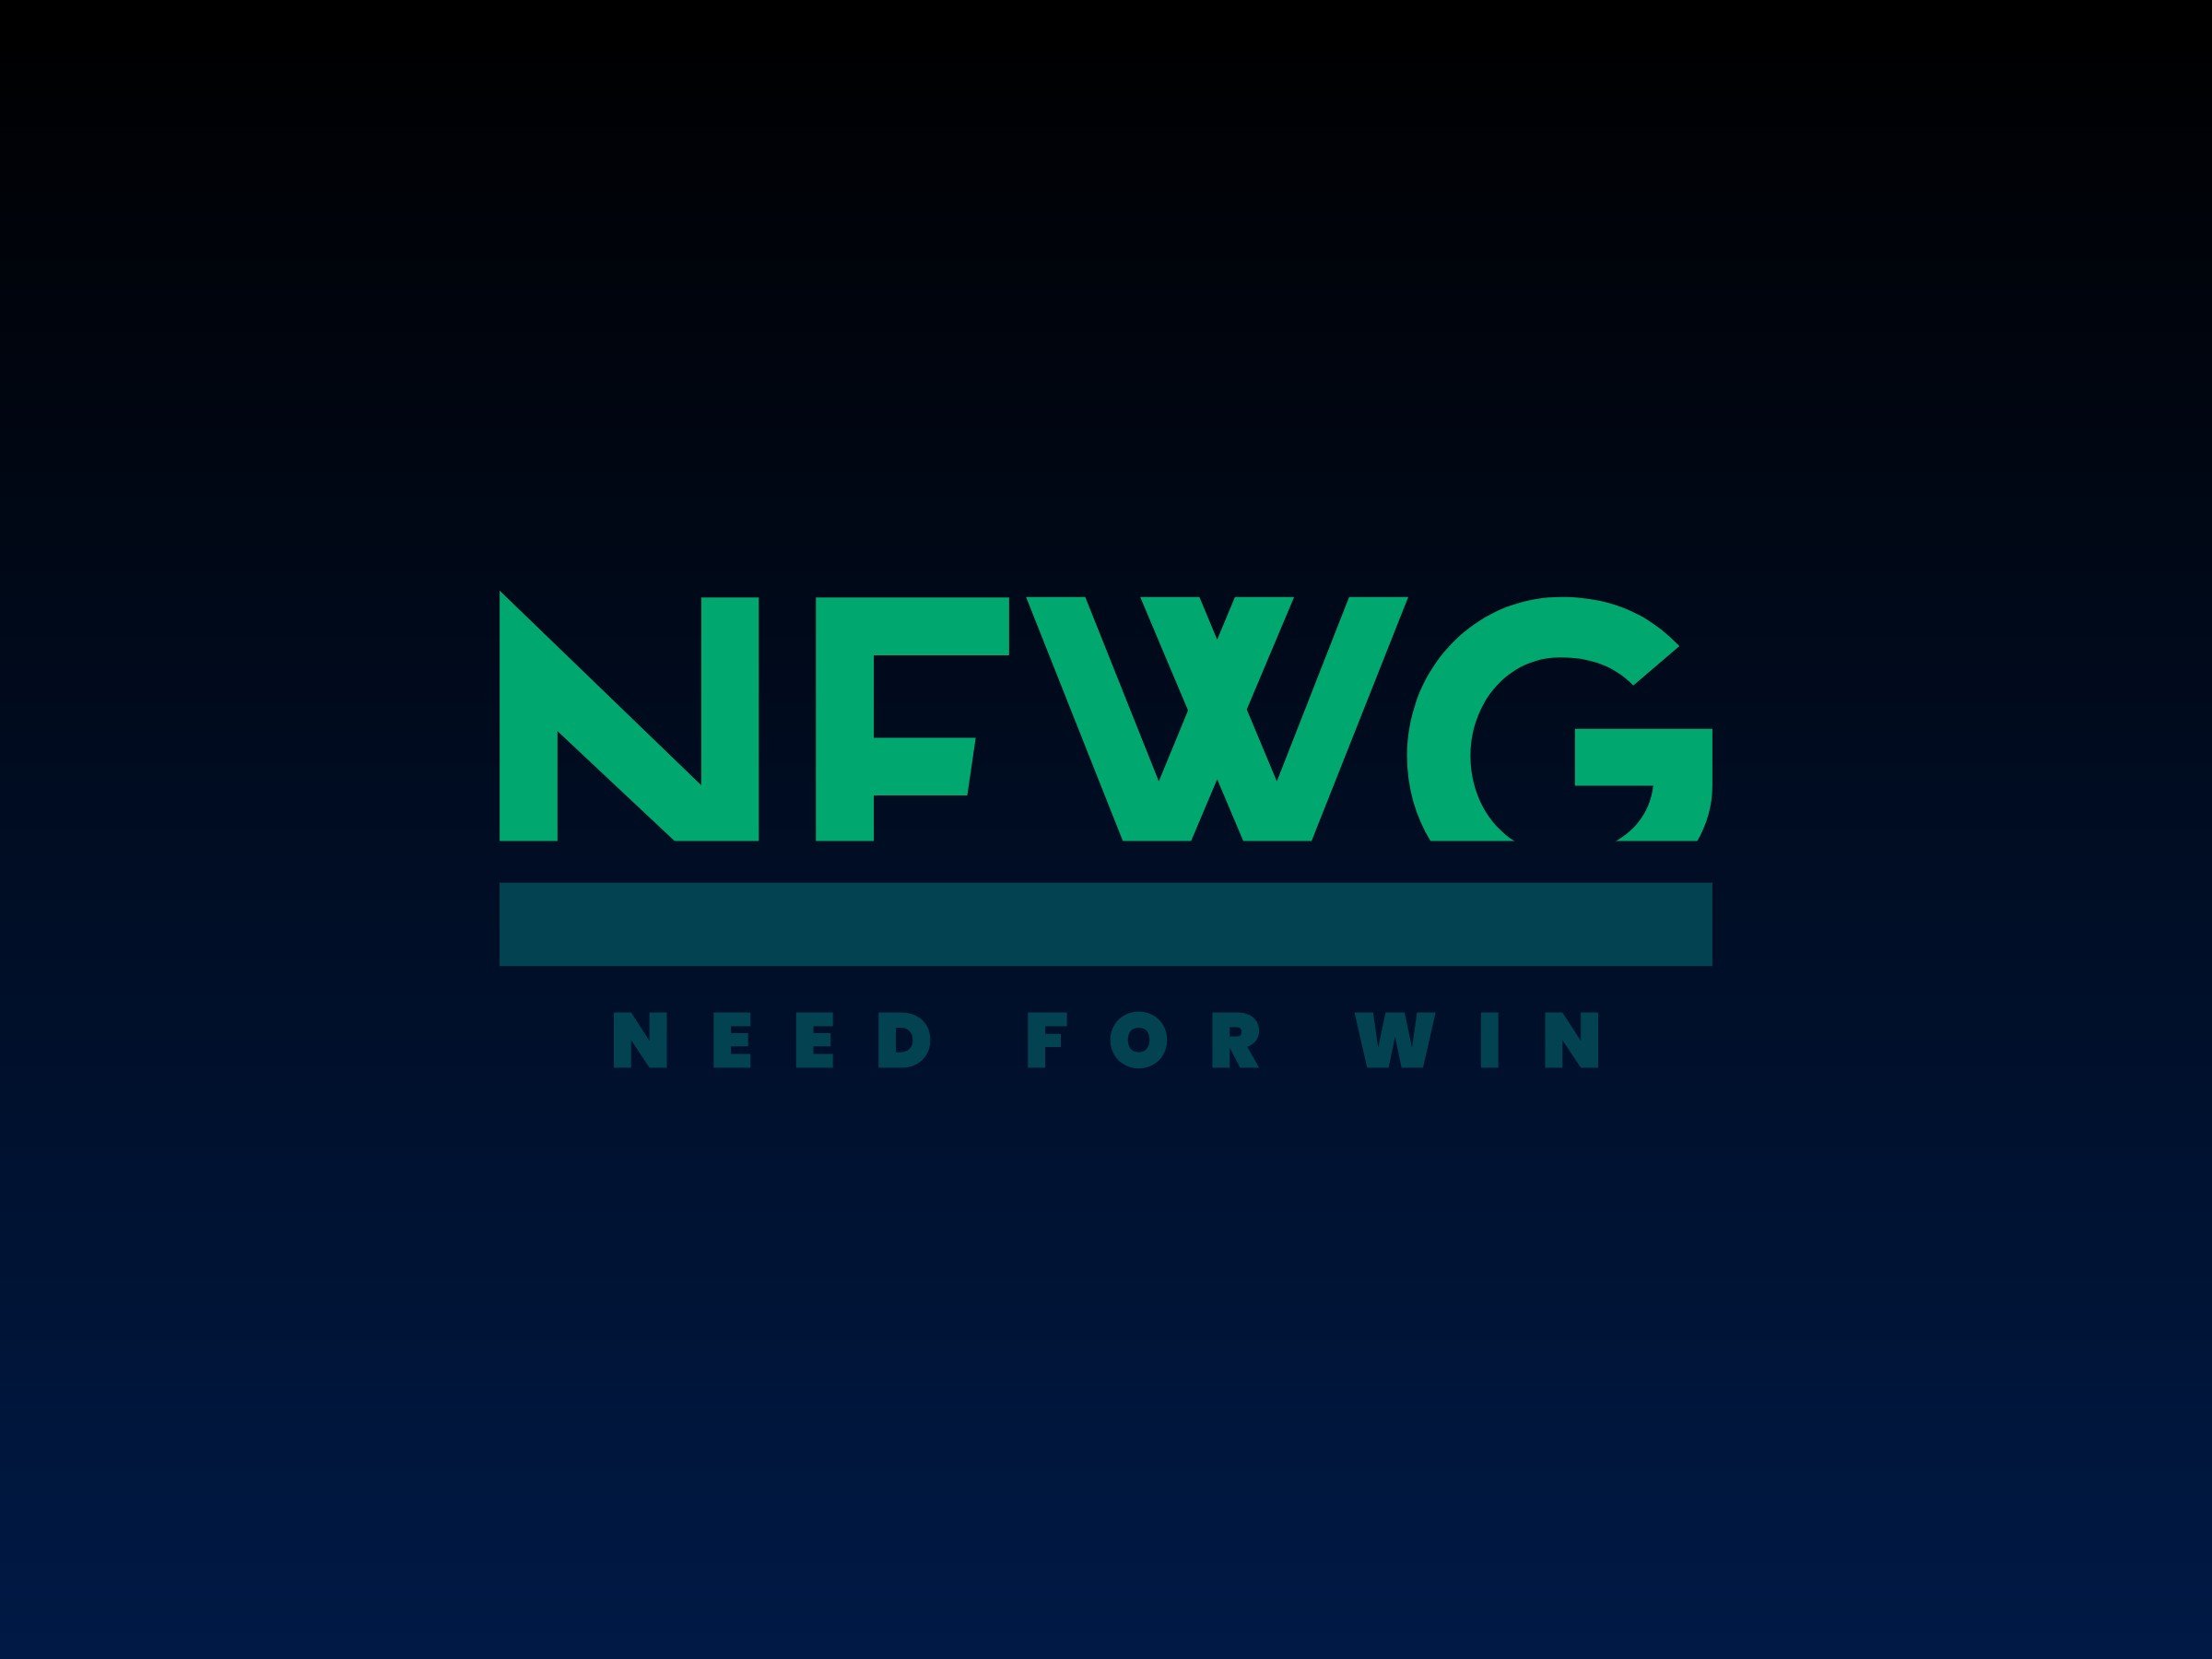 NFWG logo design